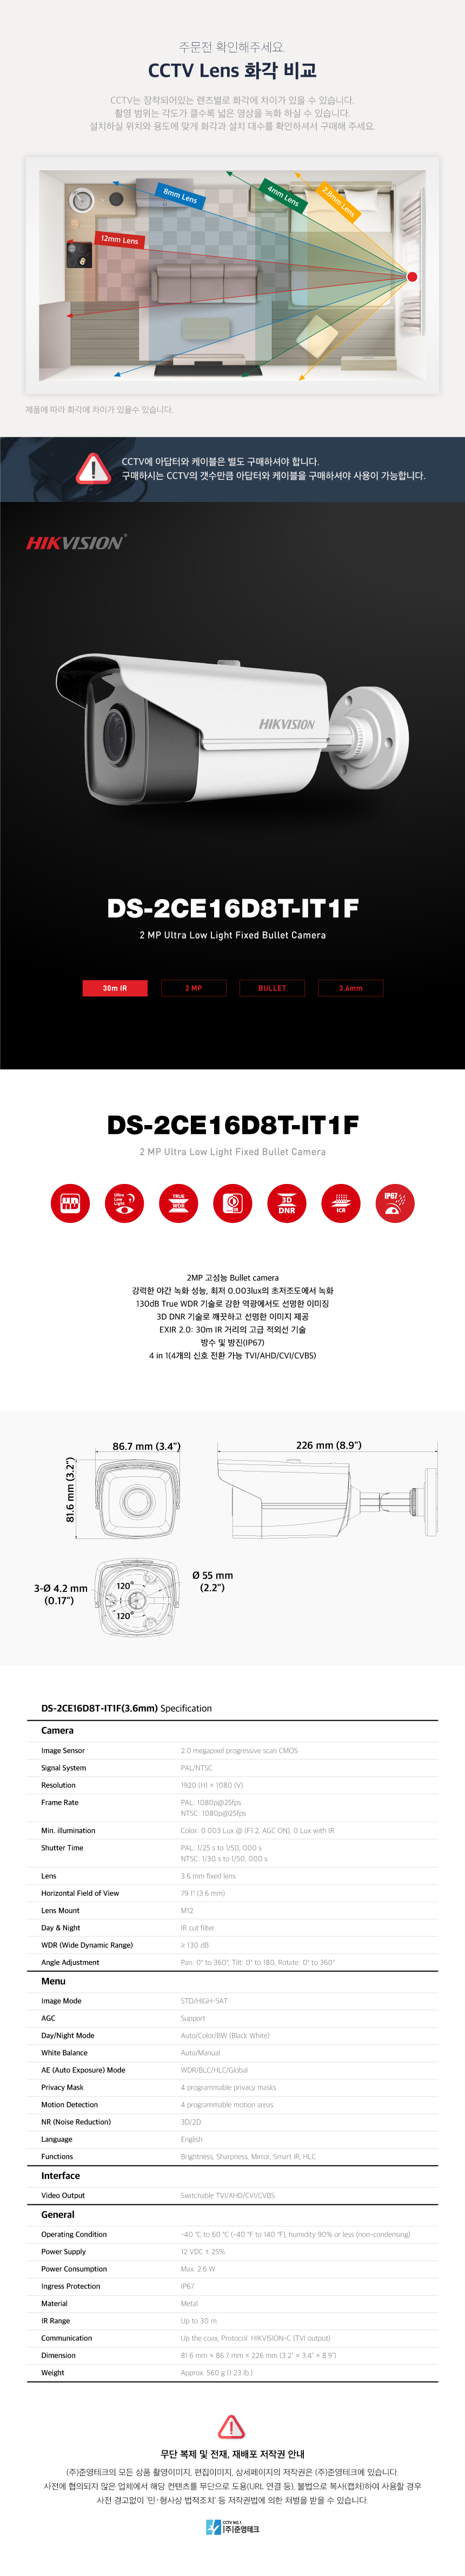 DS-2CE16D8T-IT1F_3.6mm_172334_132301.png